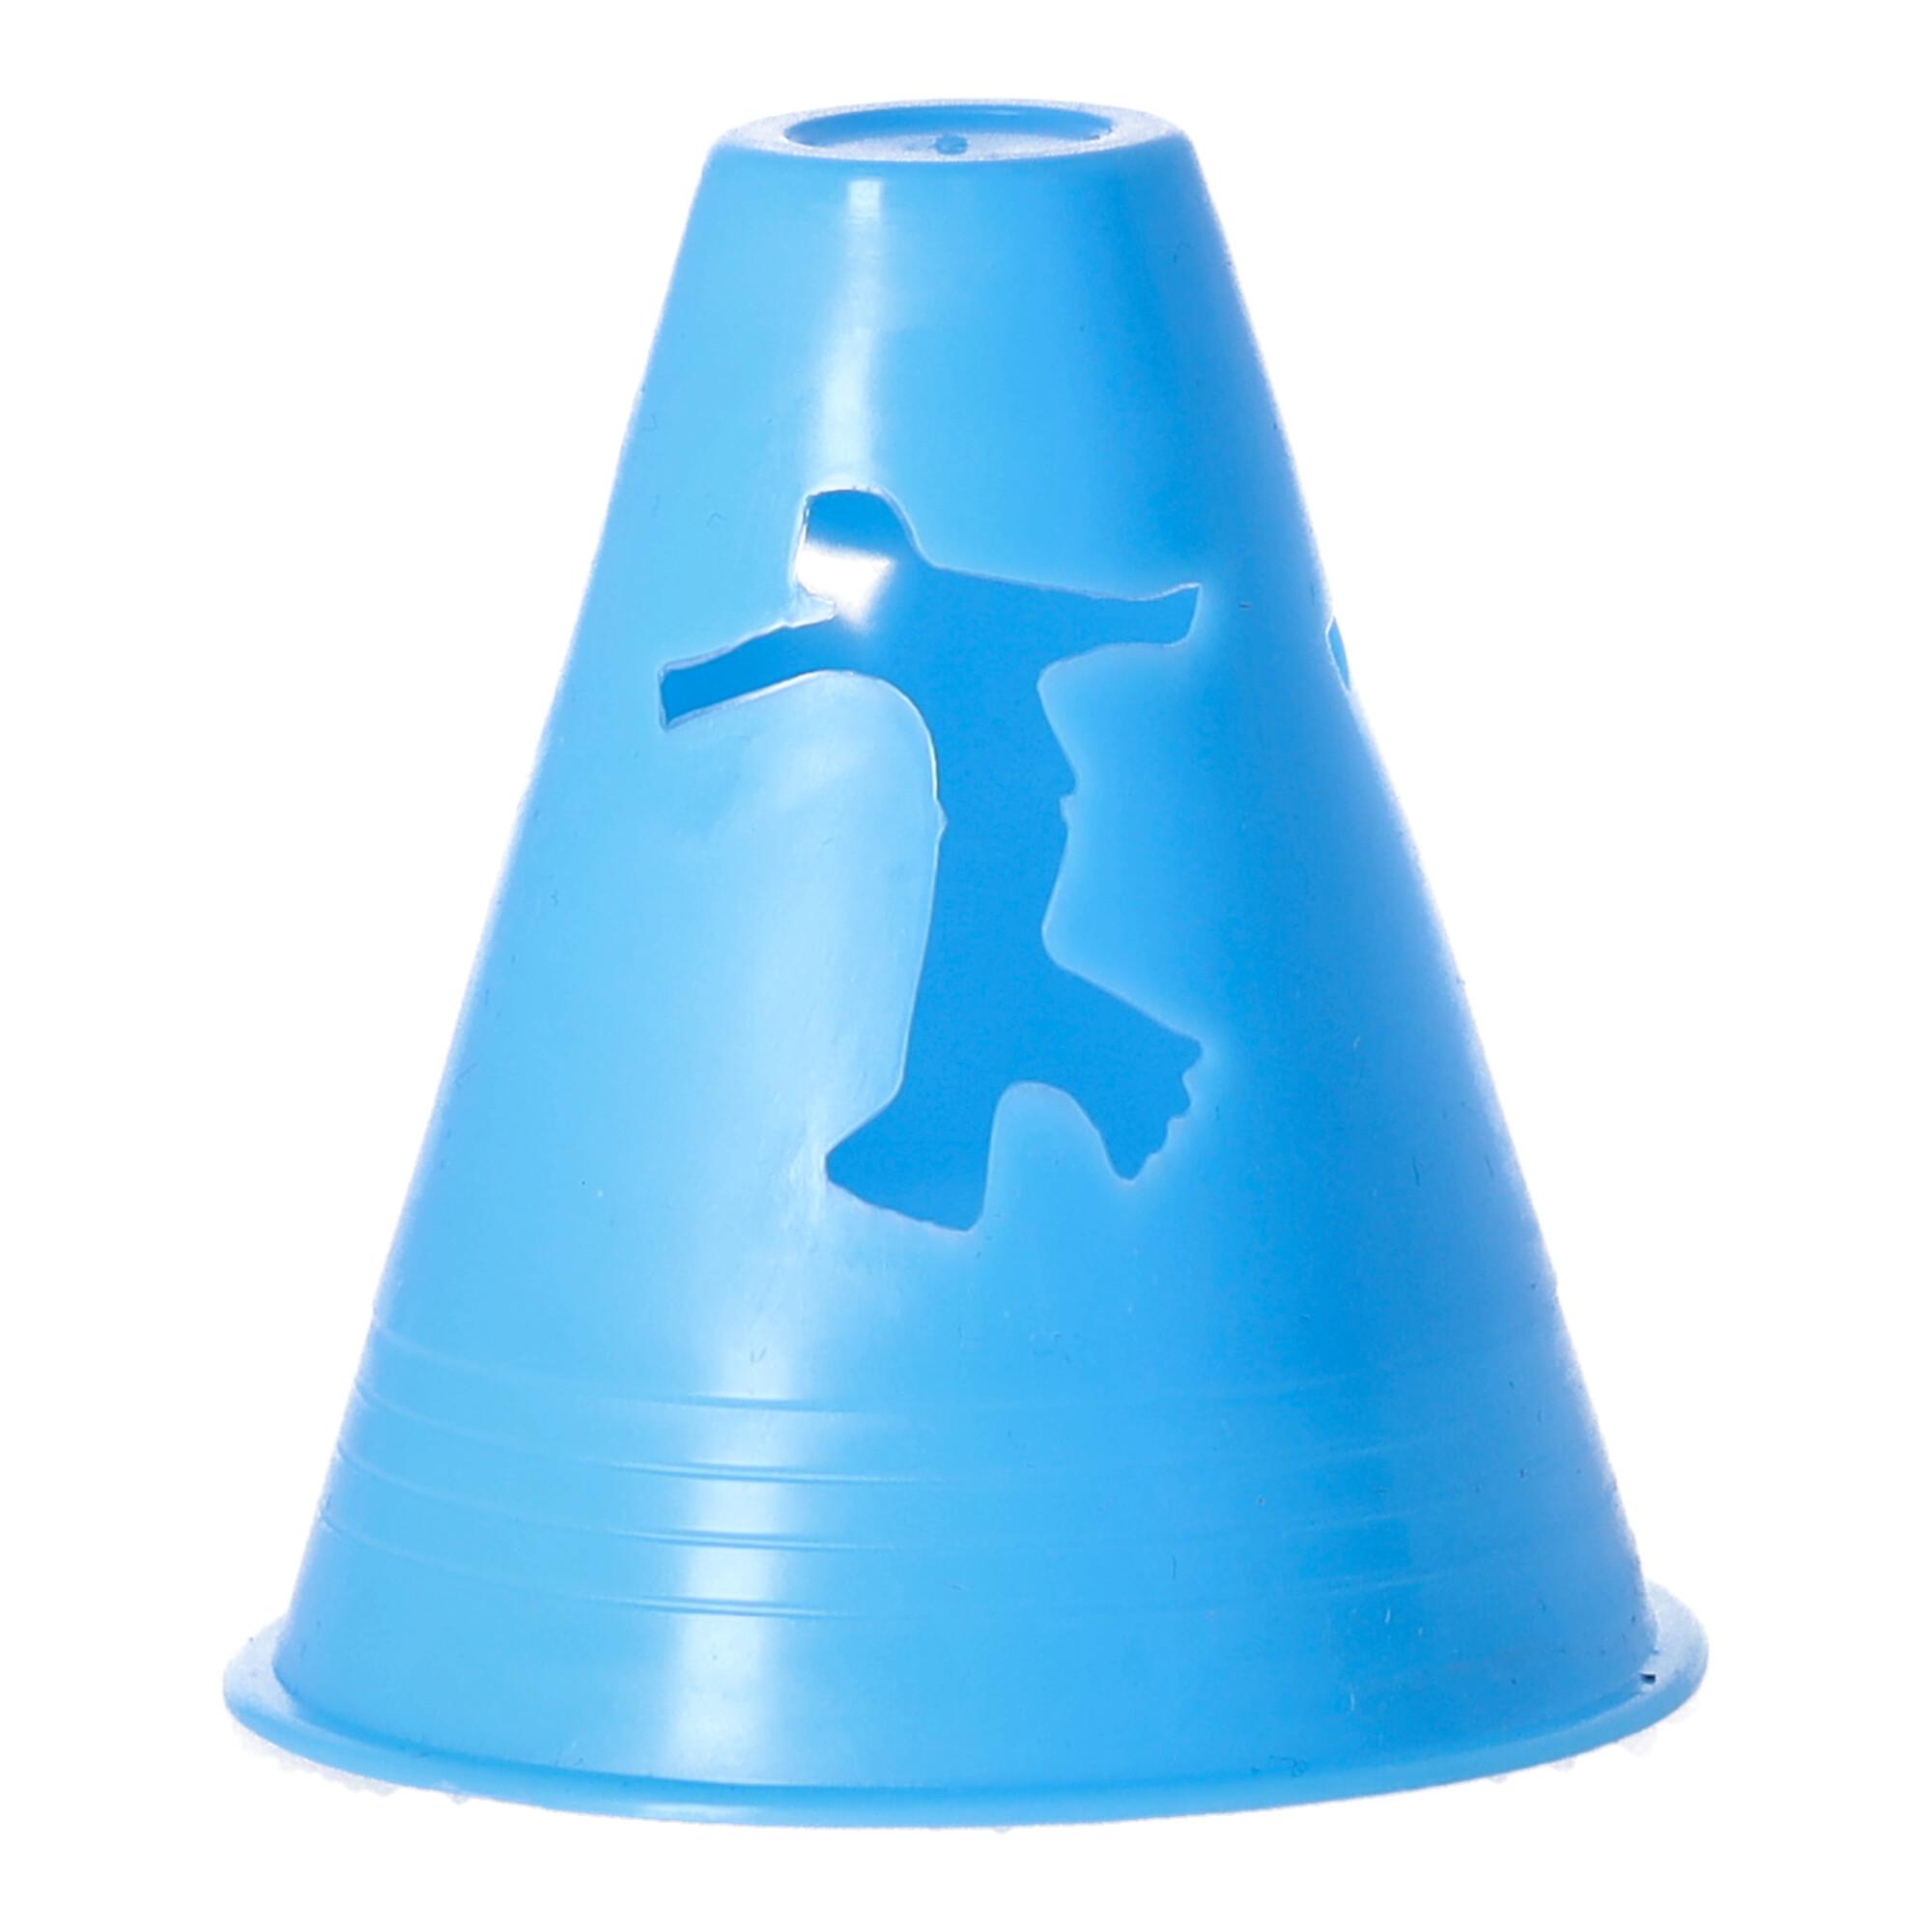 Slalom cones - blue